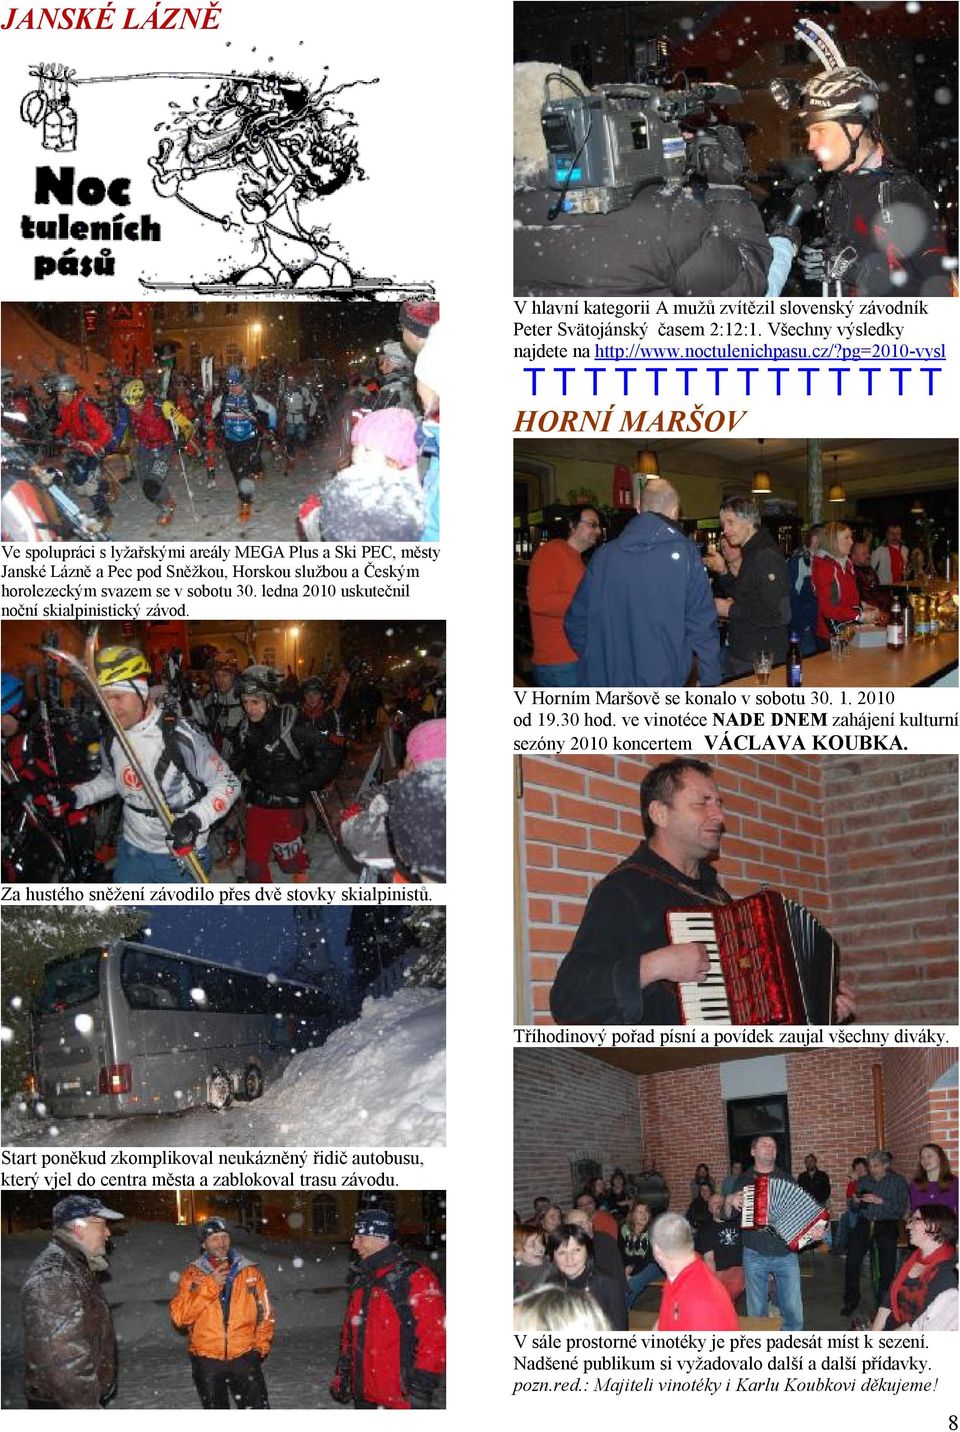 ledna 2010 uskutečnil noční skialpinistický závod. V Horním Maršově se konalo v sobotu 30. 1. 2010 od 19.30 hod. ve vinotéce NADE DNEM zahájení kulturní sezóny 2010 koncertem VÁCLAVA KOUBKA.